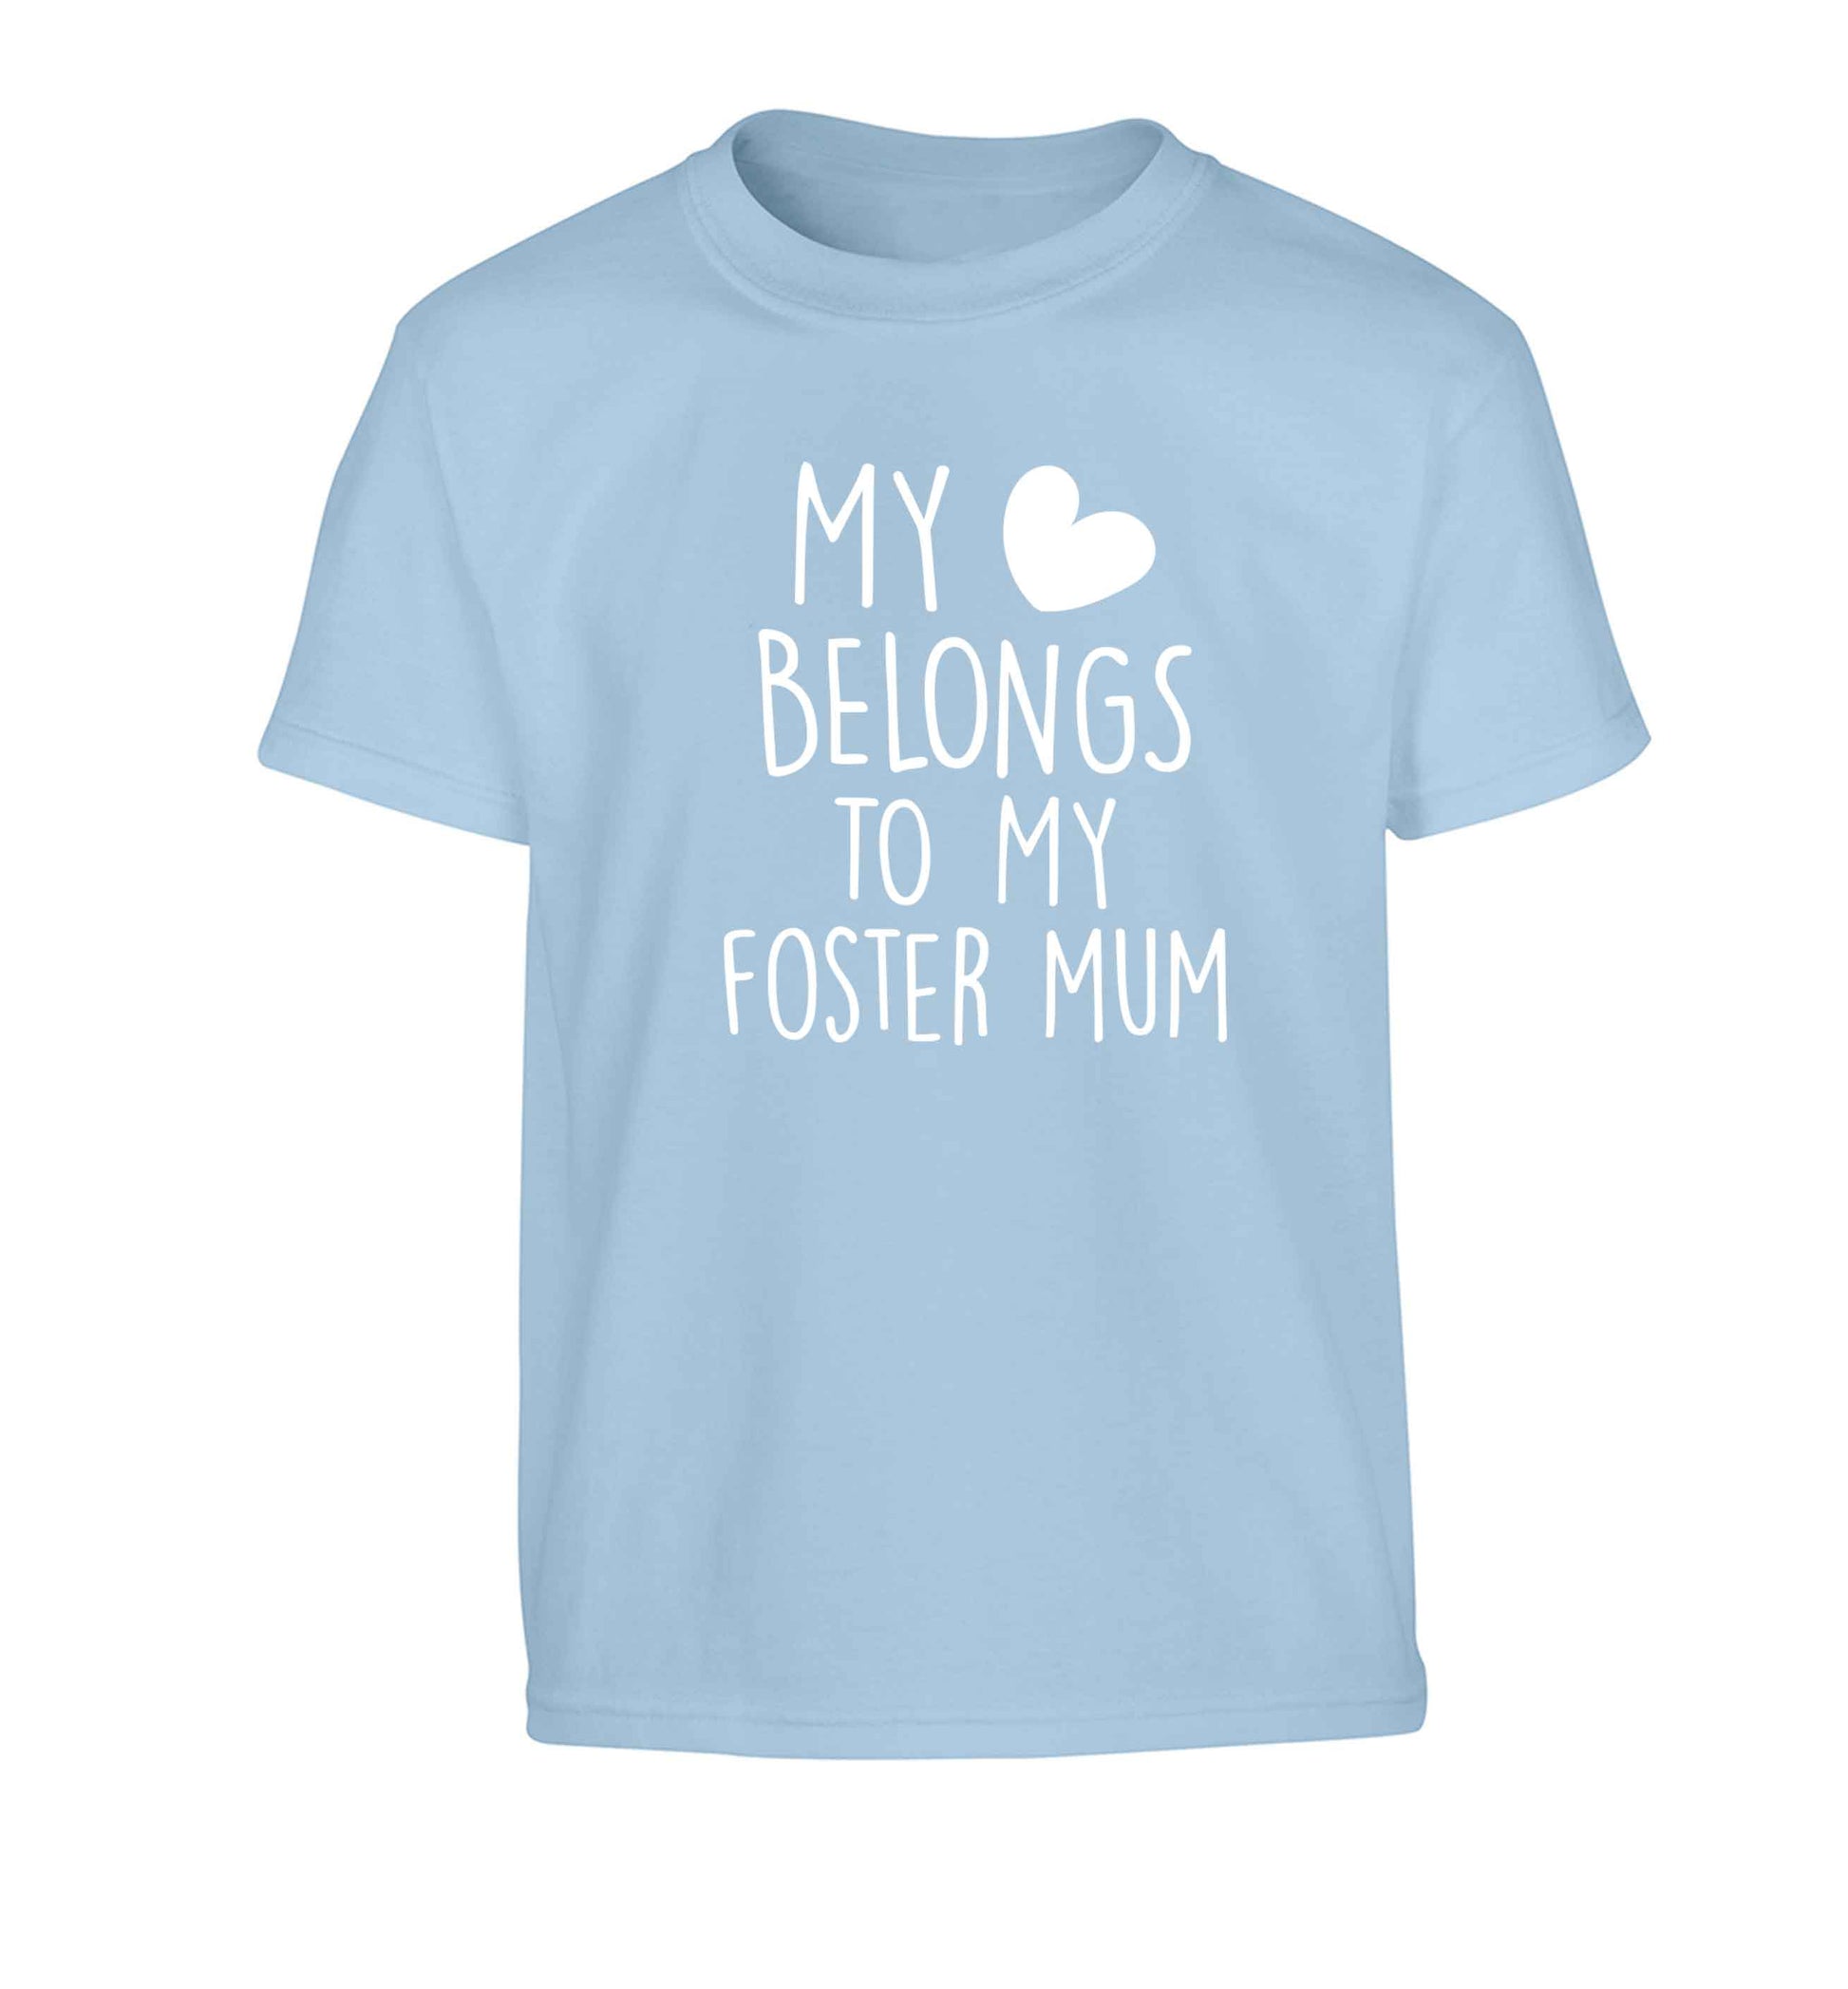 My heart belongs to my foster mum Children's light blue Tshirt 12-13 Years